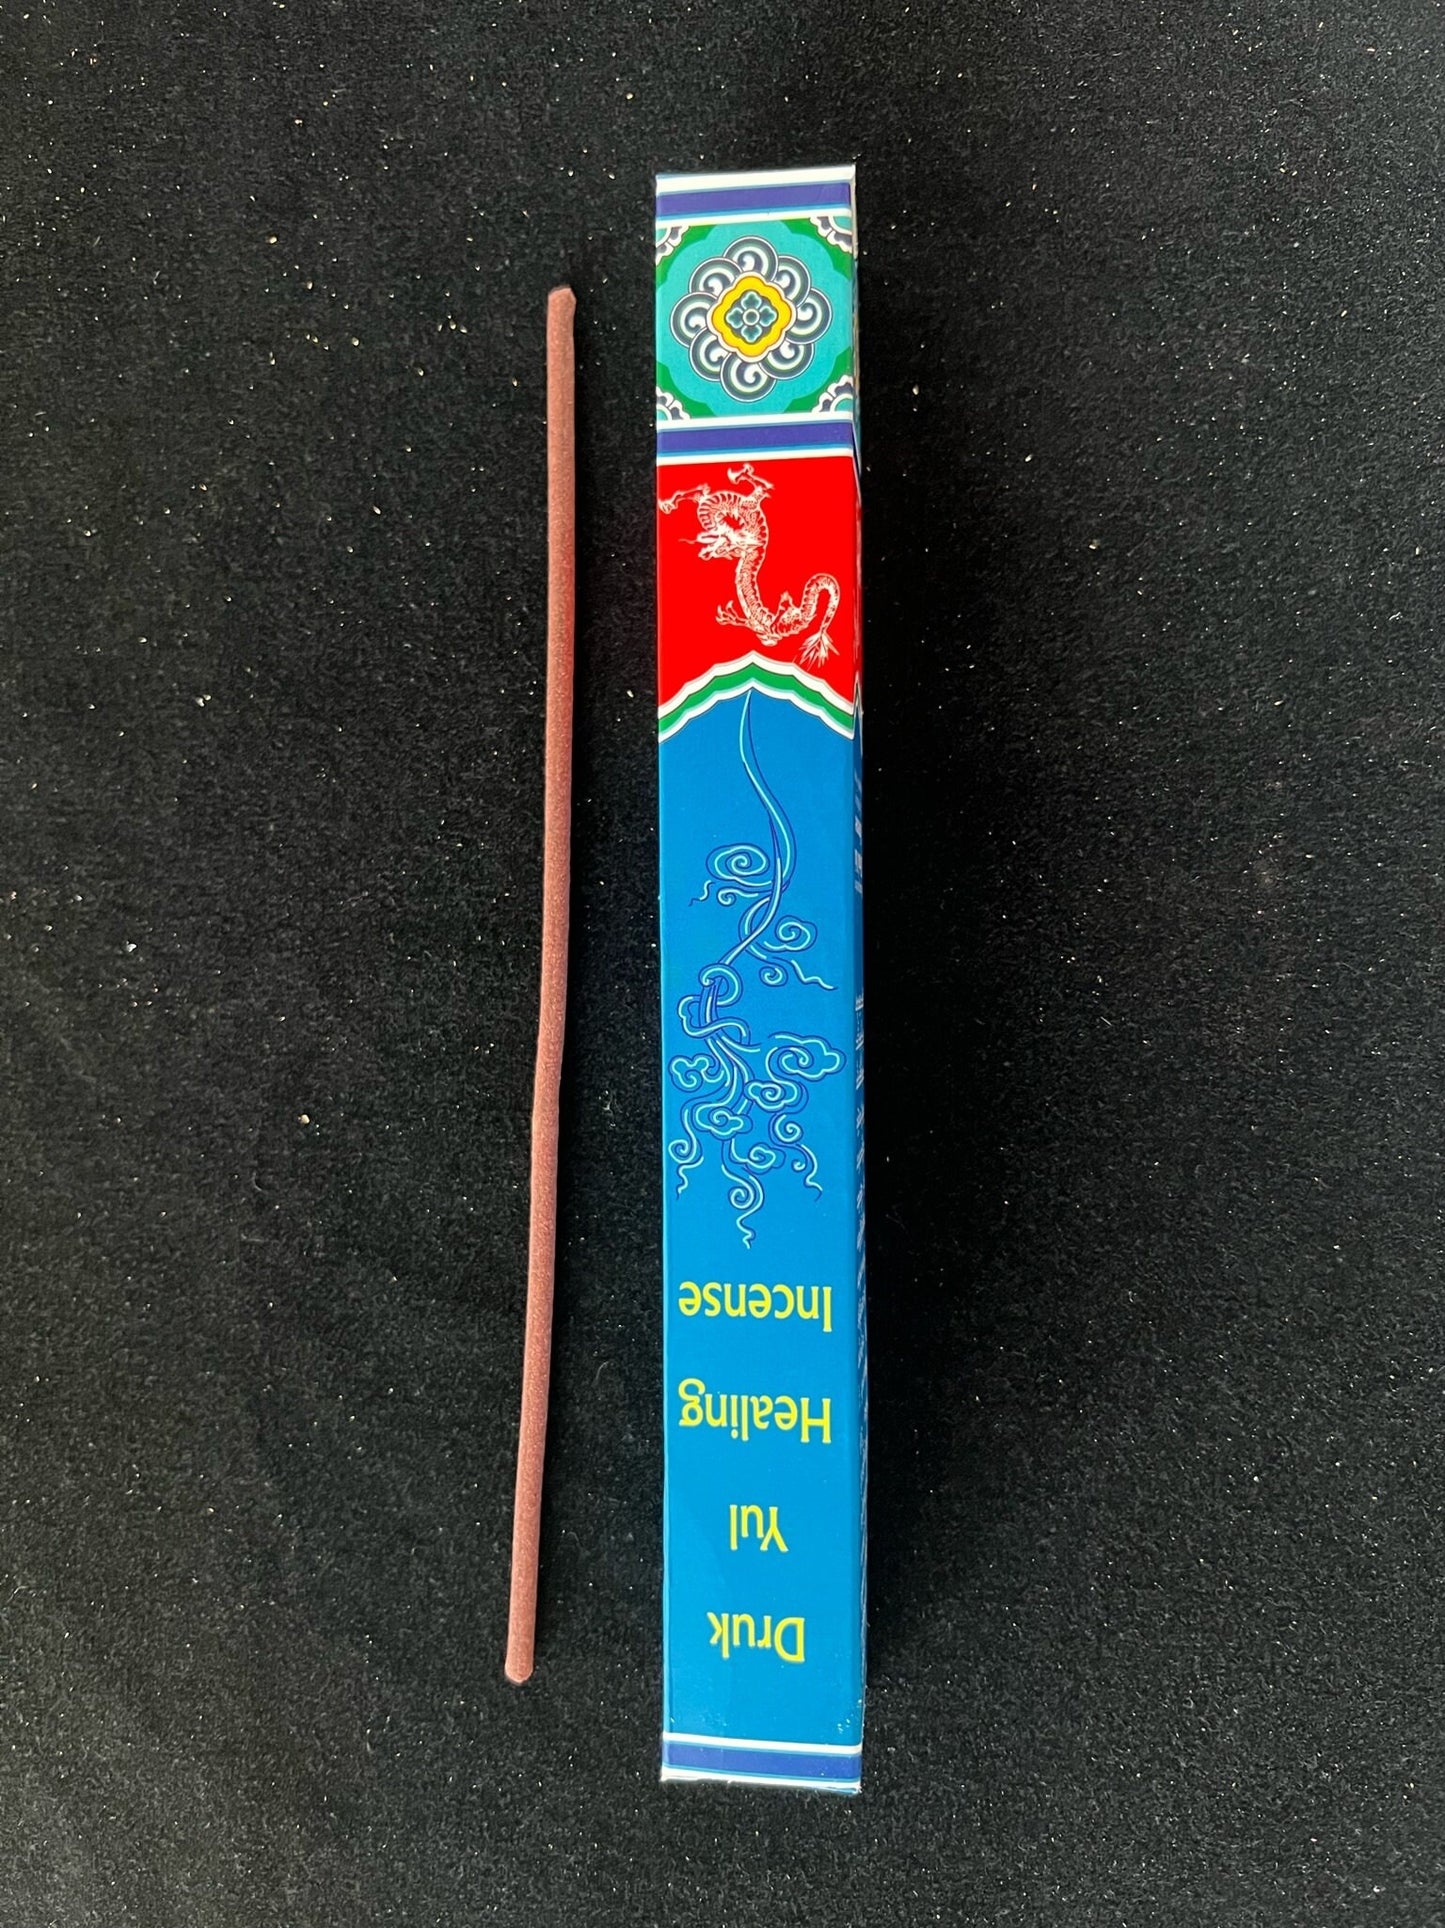 Druk Yul Healing Incense  | Tibetan Incense | 24 sticks | 8 inch sticks